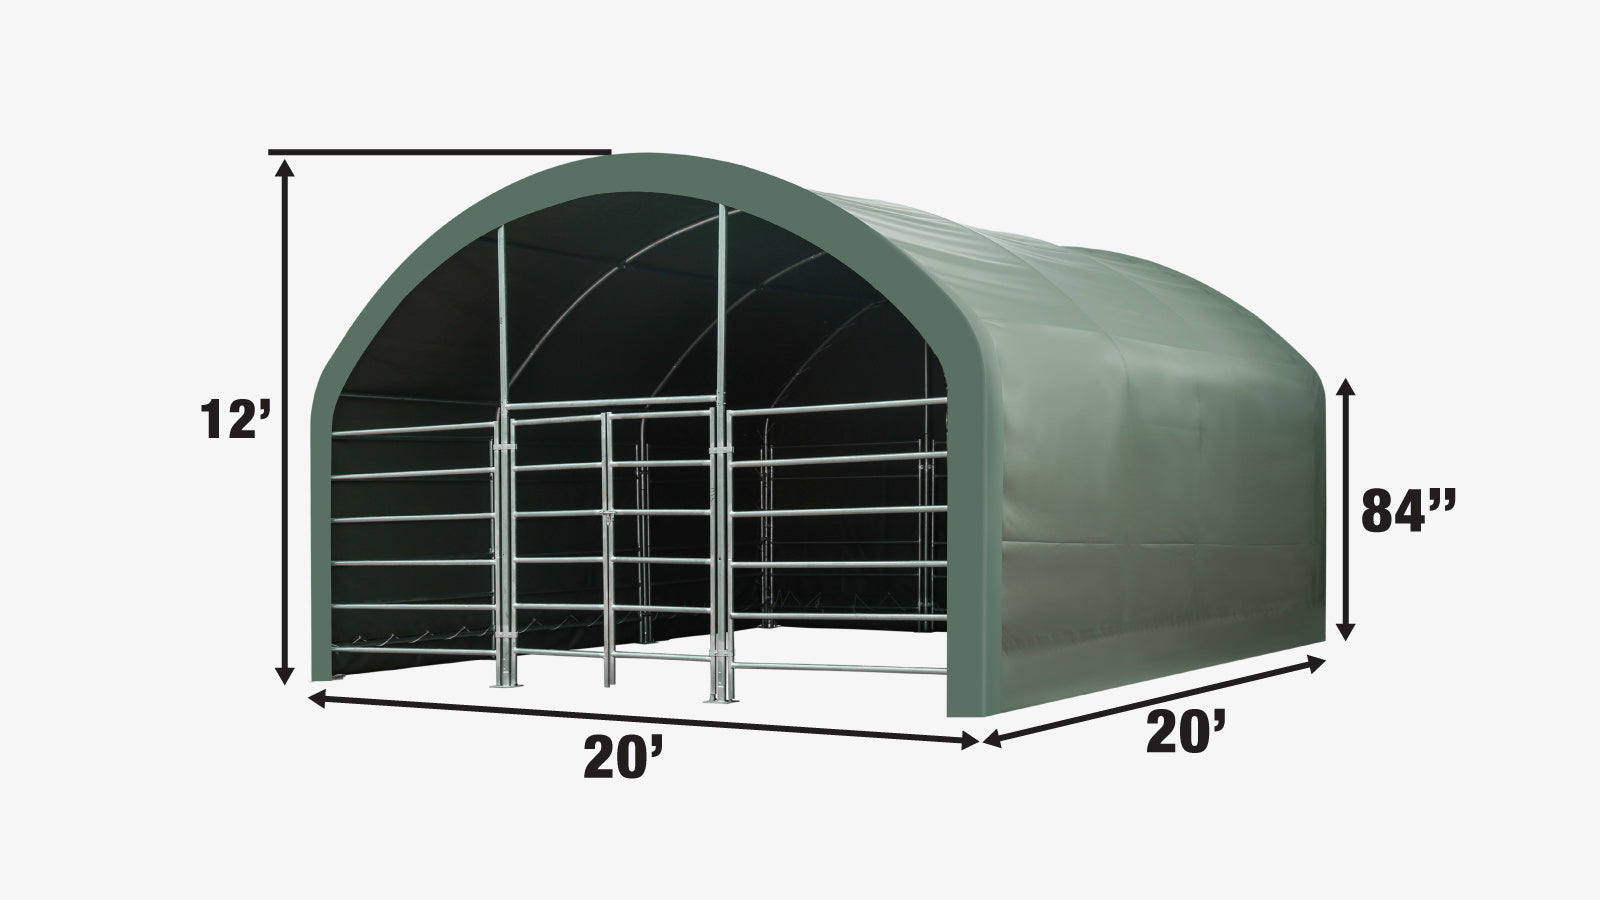 TMG Industrial 20' x 20' Abri de corral pour bétail, structure enduite de poudre, toit en dôme de 12', revêtement en tissu PVC vert militaire de 17 oz, panneaux de corral à 6 barres, porte pivotante avant de 5', TMG-ST2020L-specifications-image